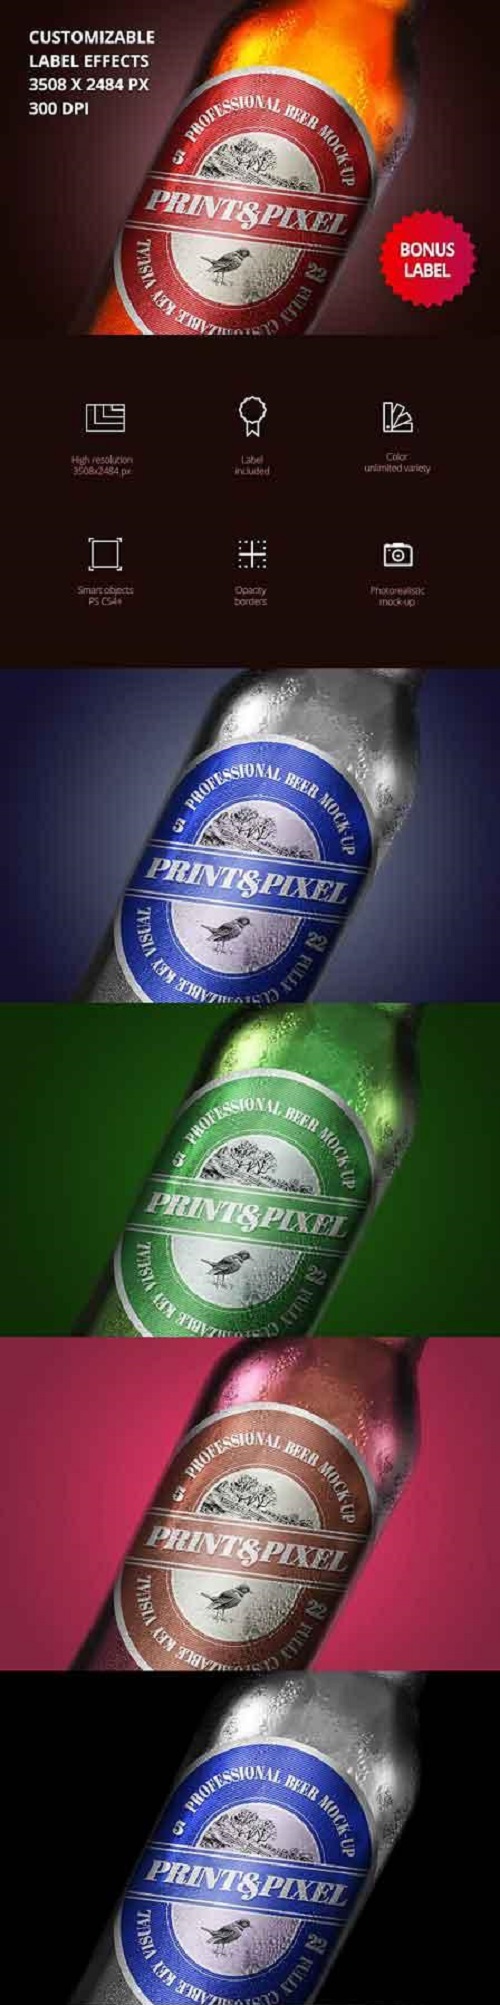 Beer close-up mock-up & label design 1754880